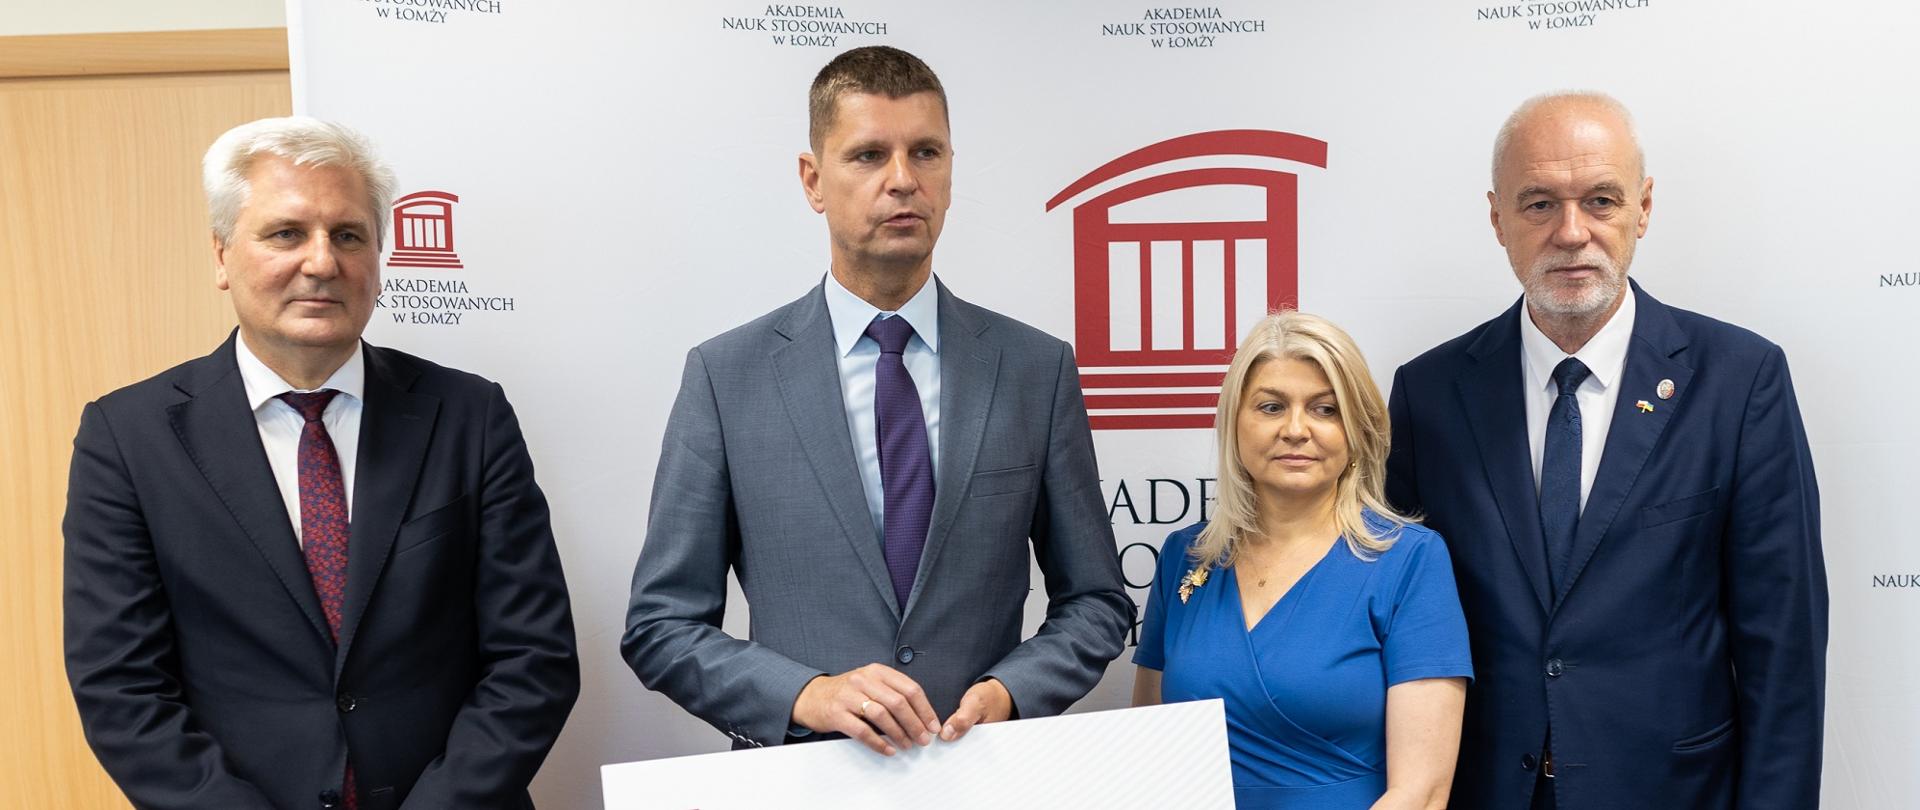 Minister Piontkowski stoi obok kobiety w niebieskiej sukni i dwóch mężczyzn w garniturach, trzyma symboliczny czek z napisem 4 436 900 zł.